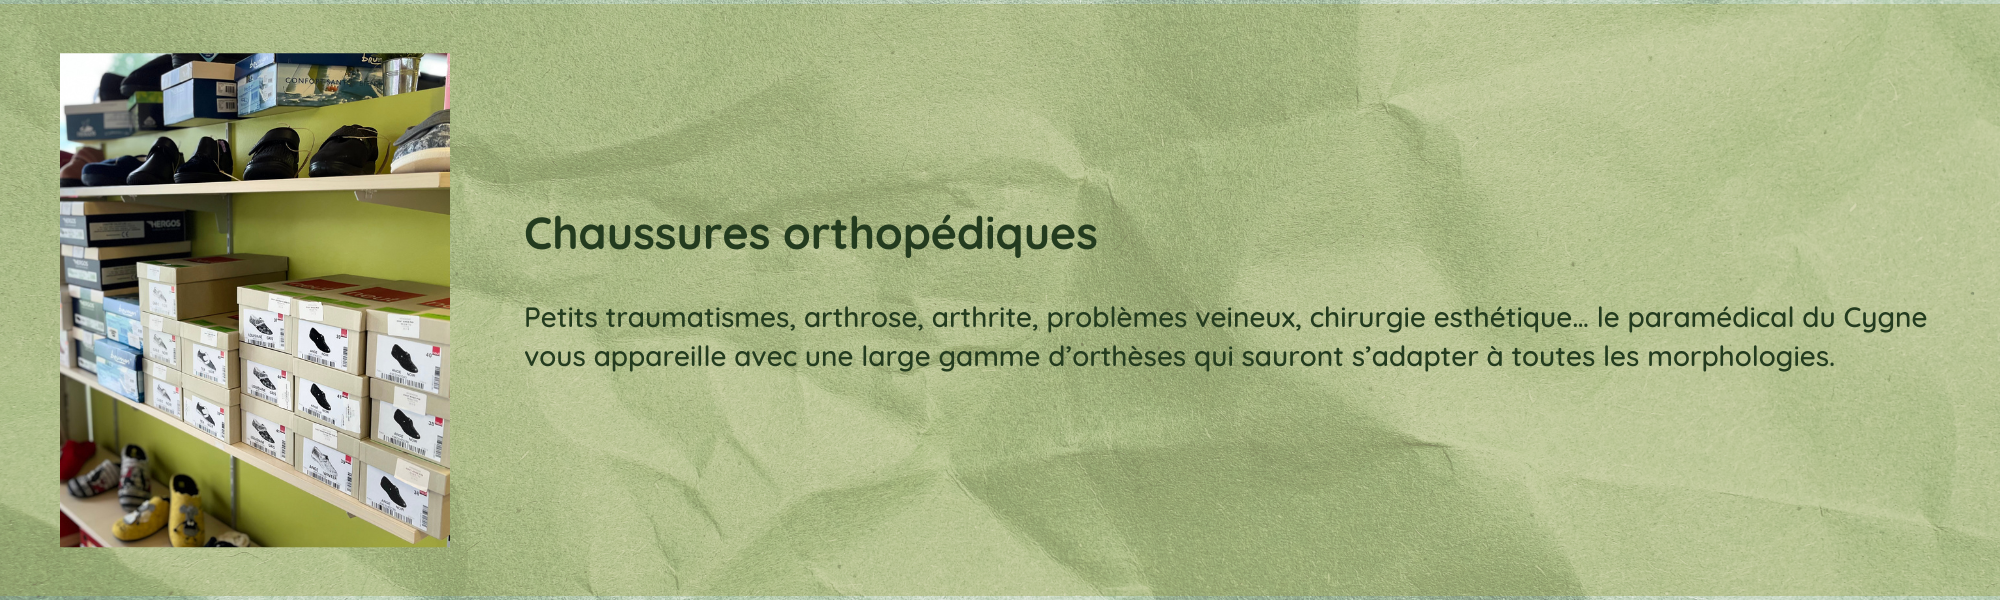 Chaussure orthopédique (3)